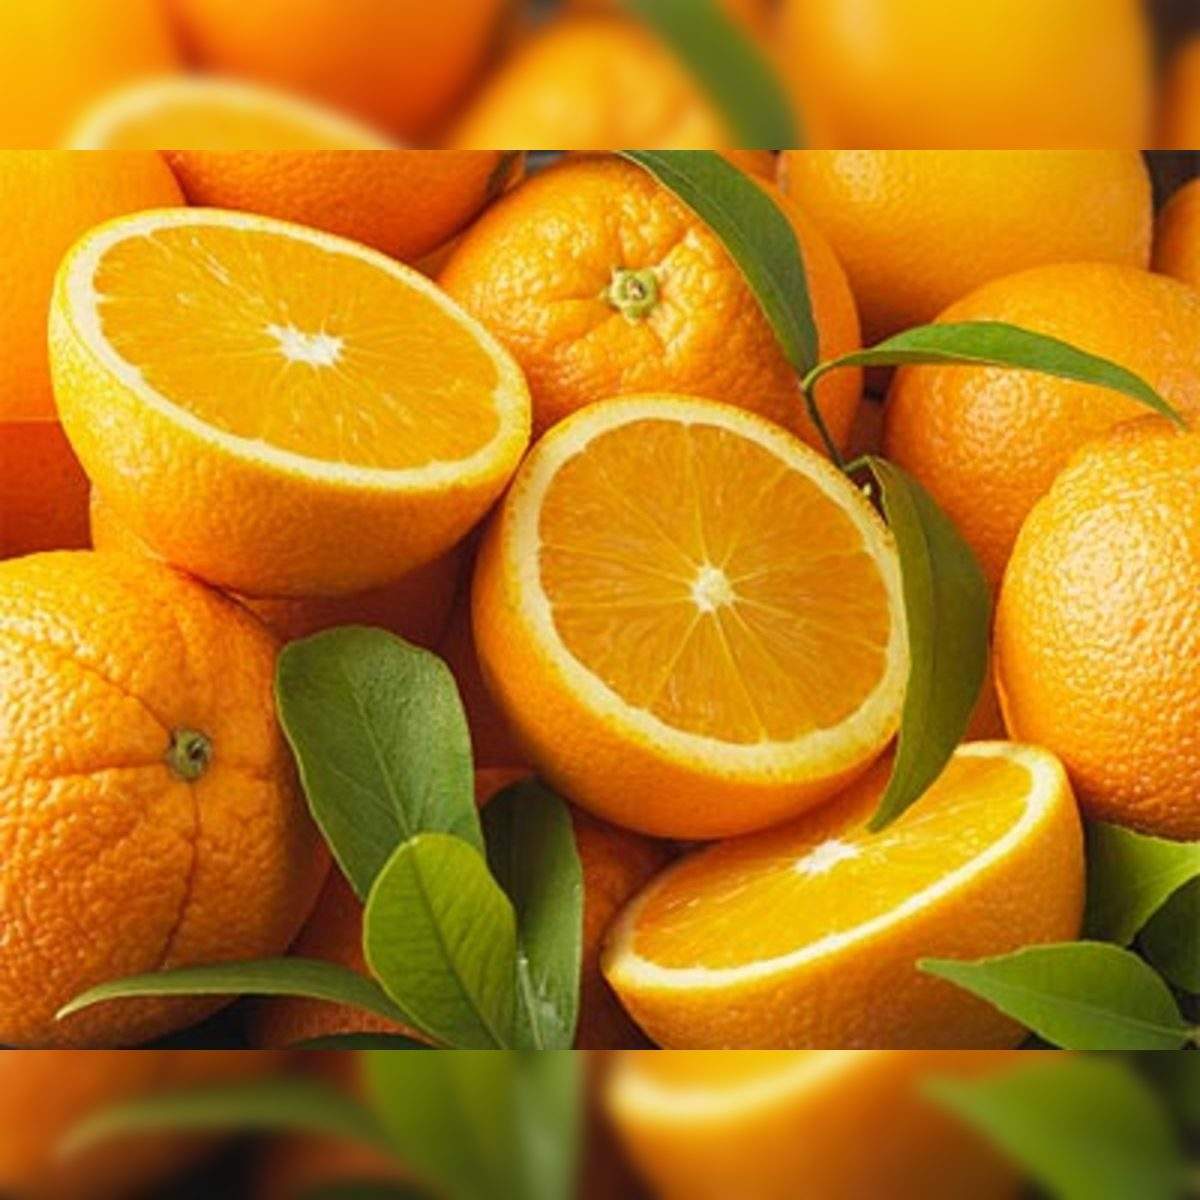 Orange Mandi Rate Today - Price Daily